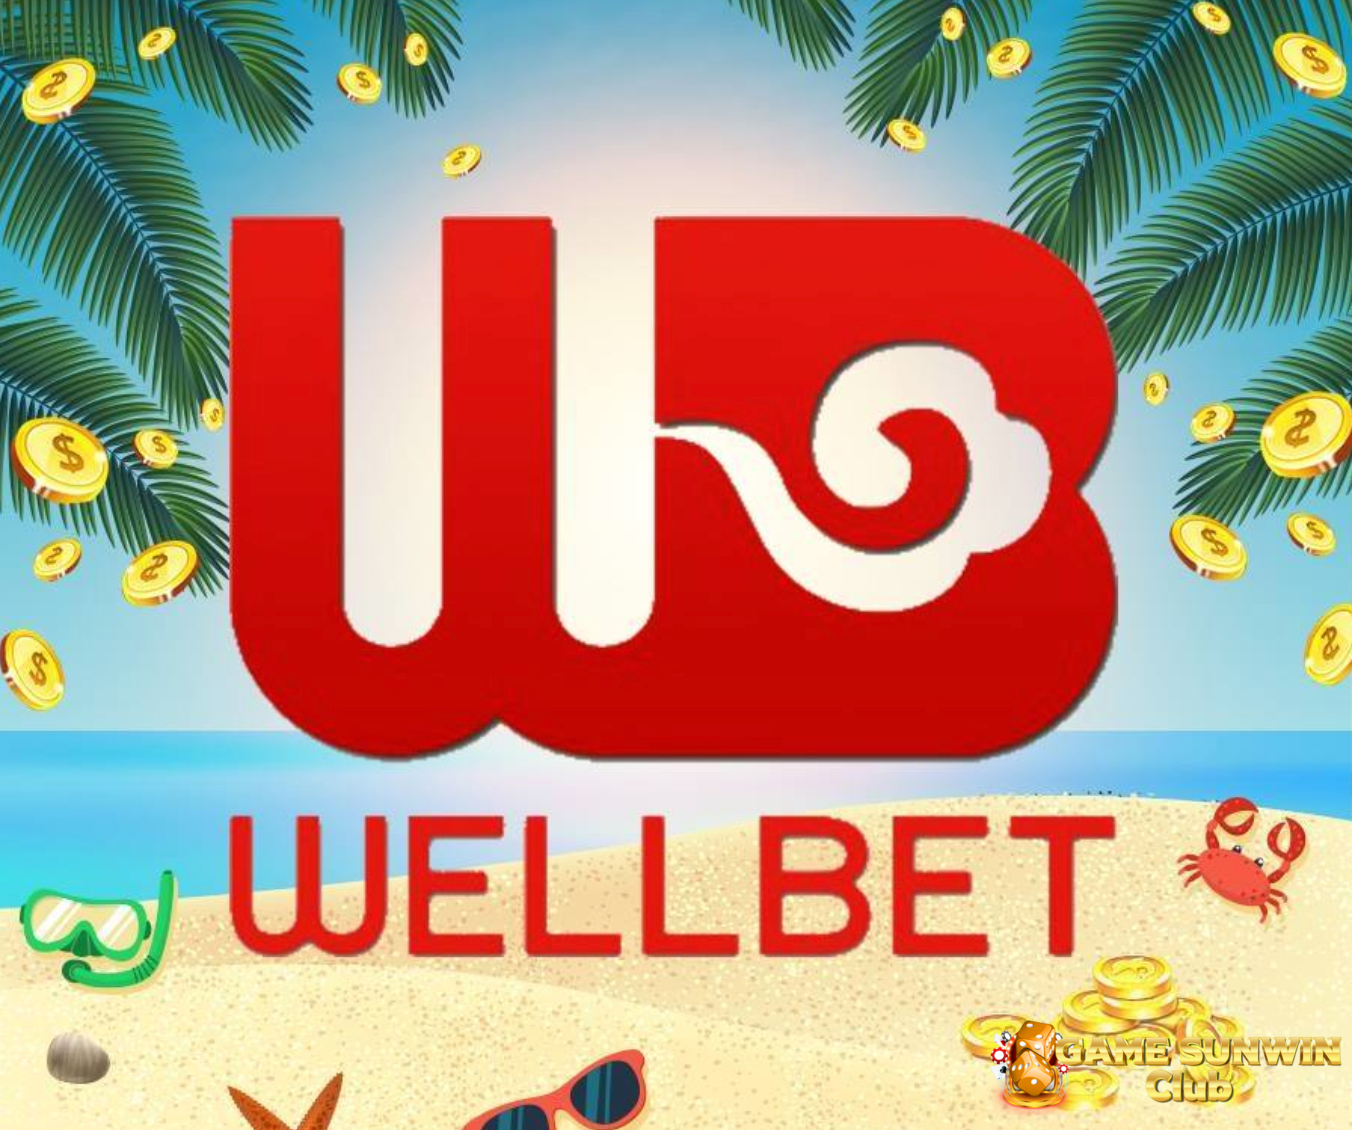 Wellbet trên thị trường đổi thưởng chính là cổng game bảo mật, uy tín và hiện đại số 1